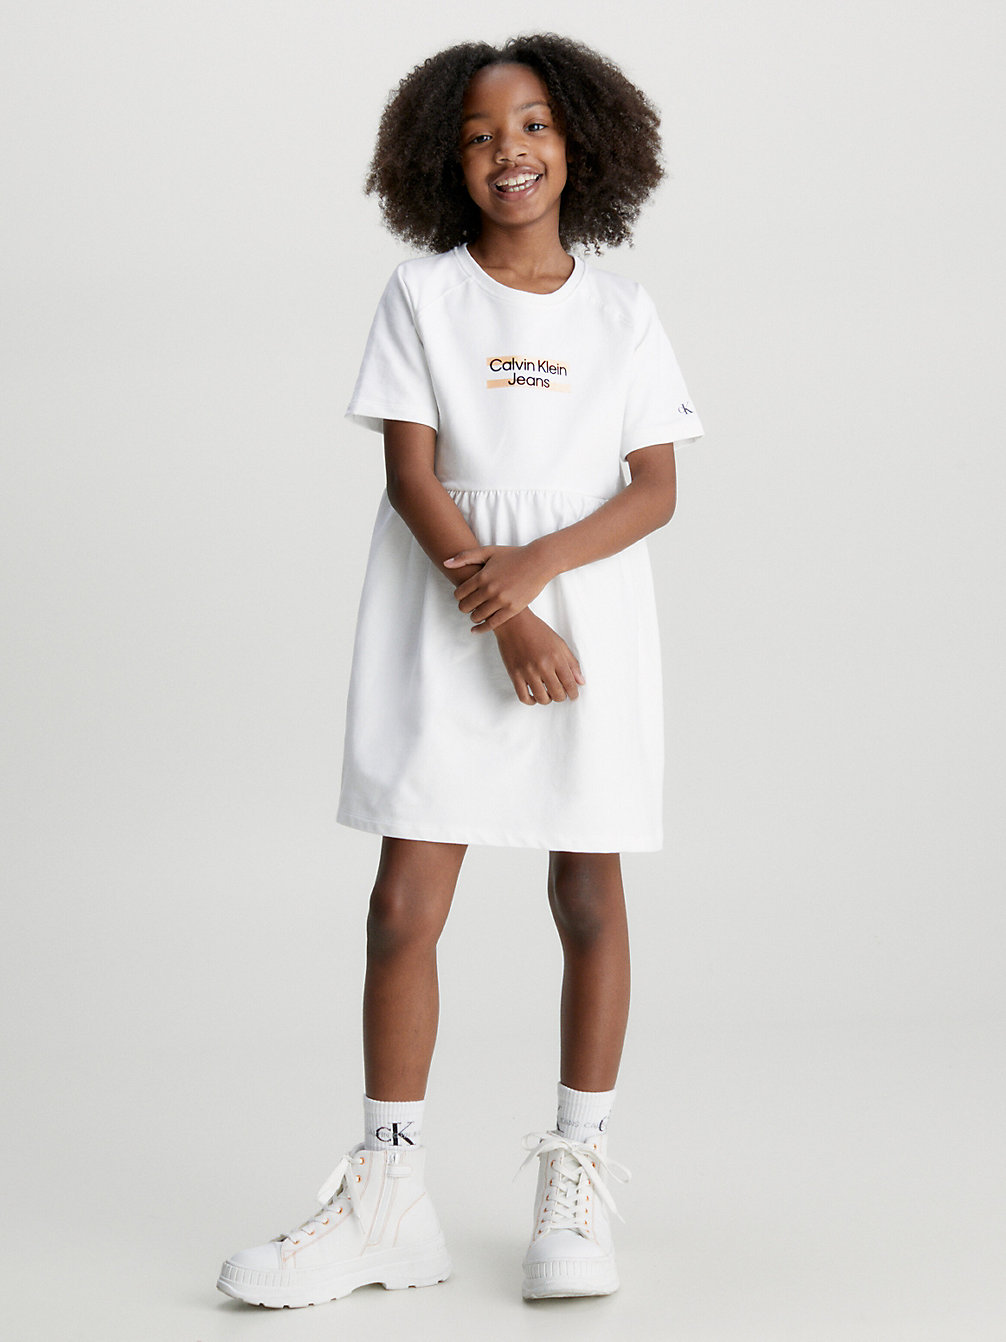 BRIGHT WHITE > Sukienka Typu T-Shirt Z Logo > undefined girls - Calvin Klein